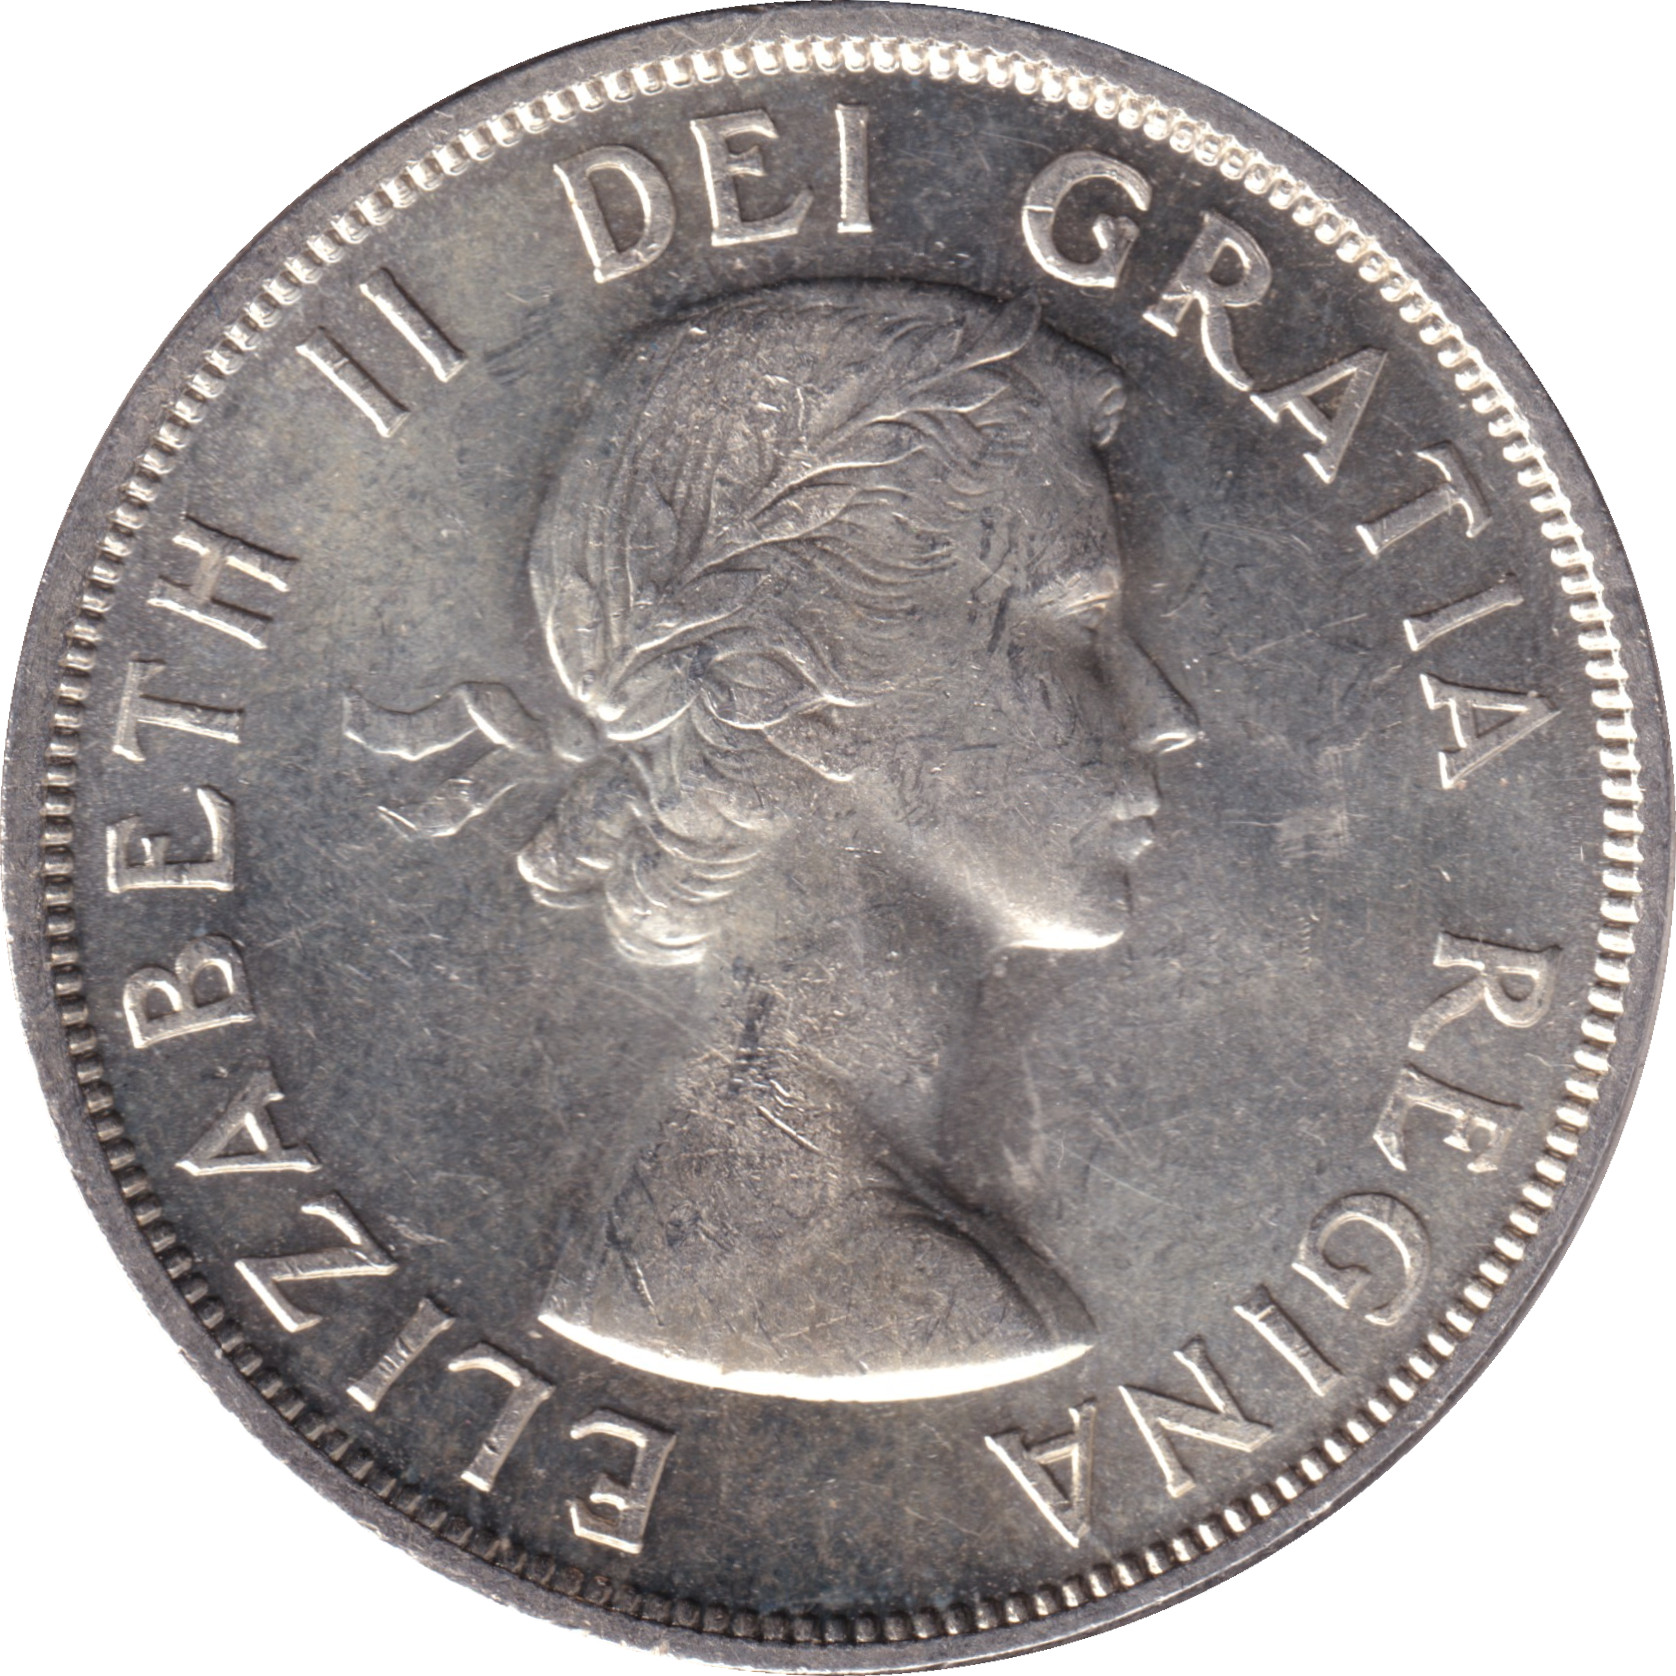 1 dollar - Elizabeth II - Young bust